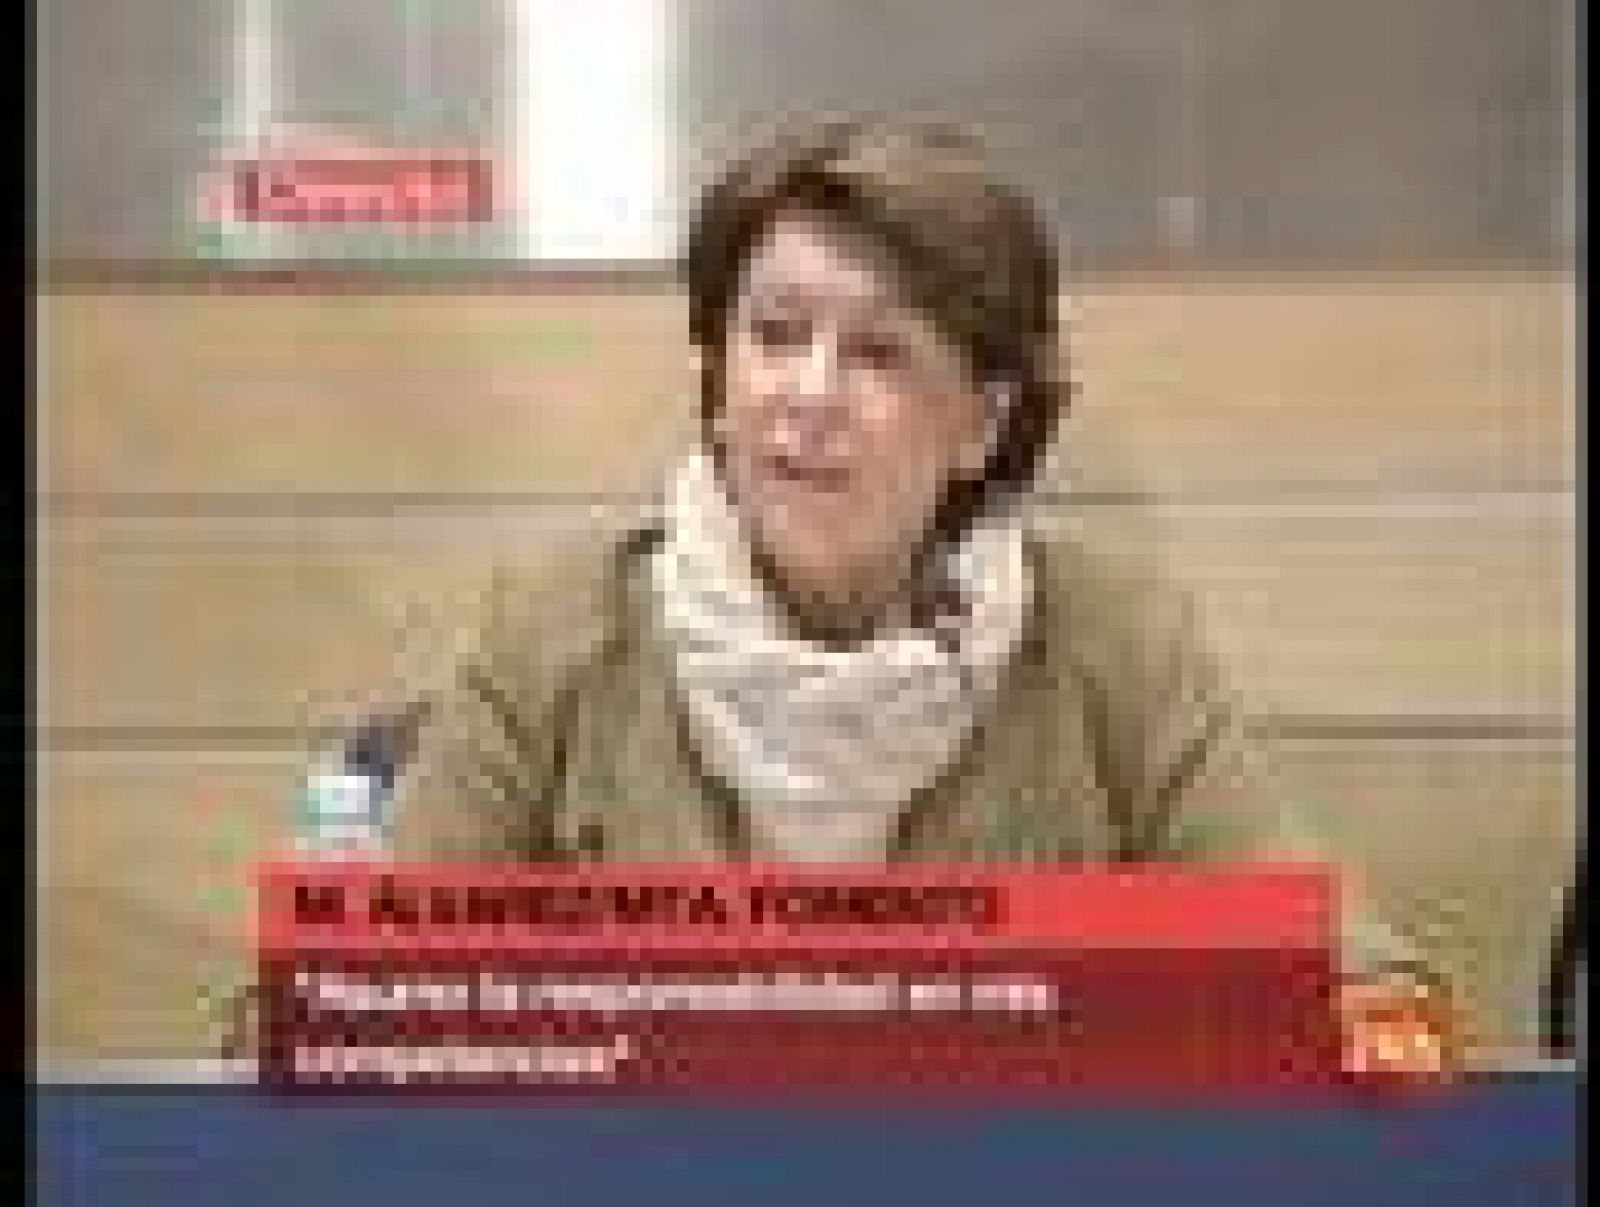   La ministra de Fomento ha respondido a la diputada autonómica popular catalana Montserrat Nebrera que afirmó que la ministra "tiene un acento que parece un chiste". En su comparecencia, Álvarez, se ha confundido en dos ocasiones al llamar a la diputada 'Negrera' en lugar de Nebreda.
